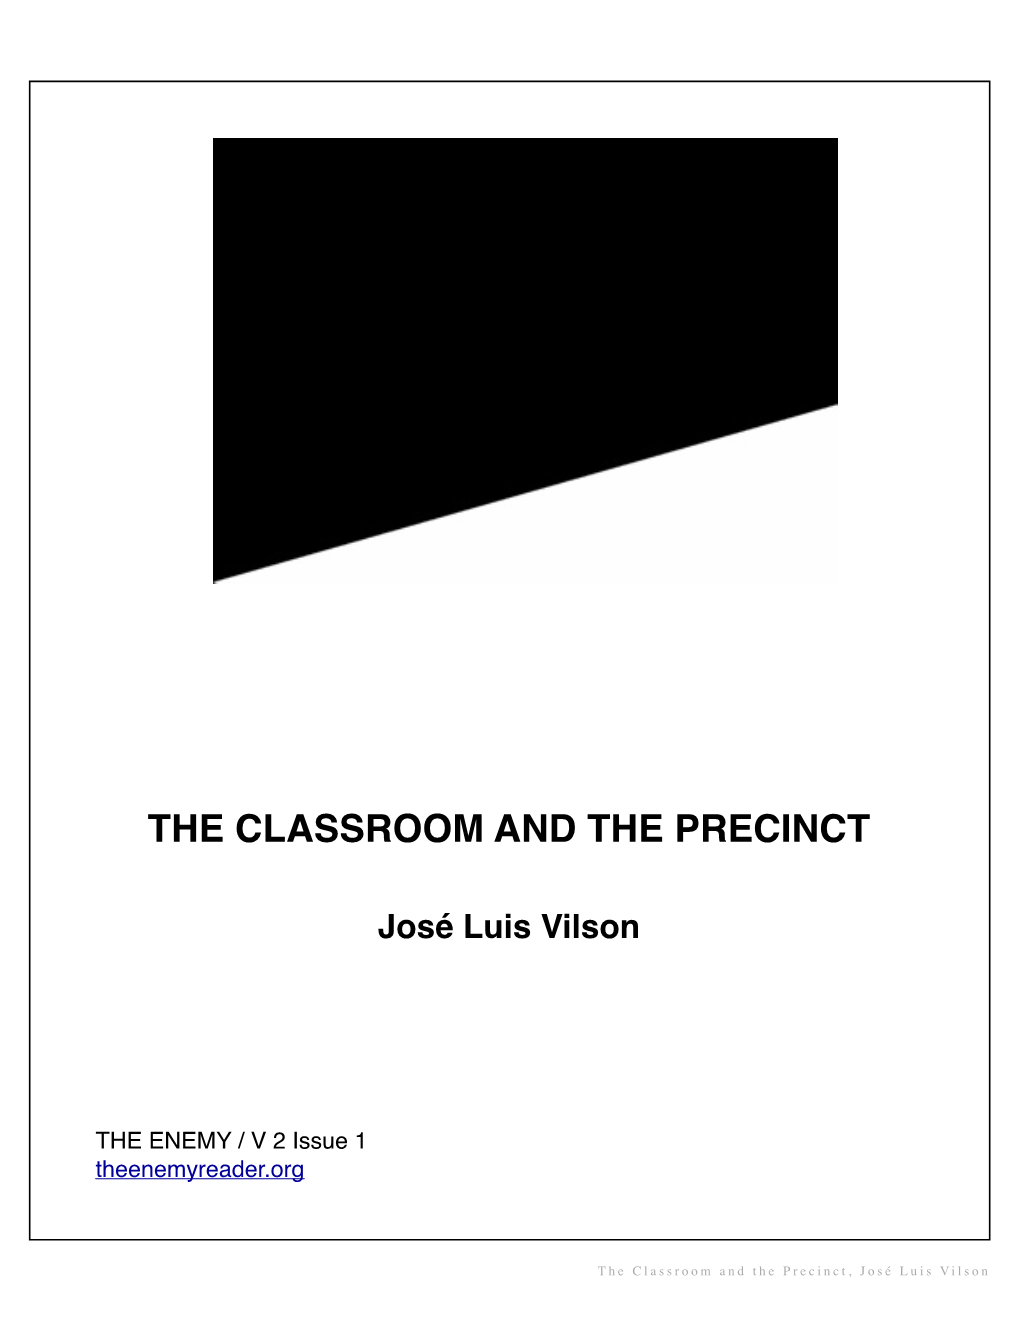 José Luis Vilson / the Classroom and the Precinct